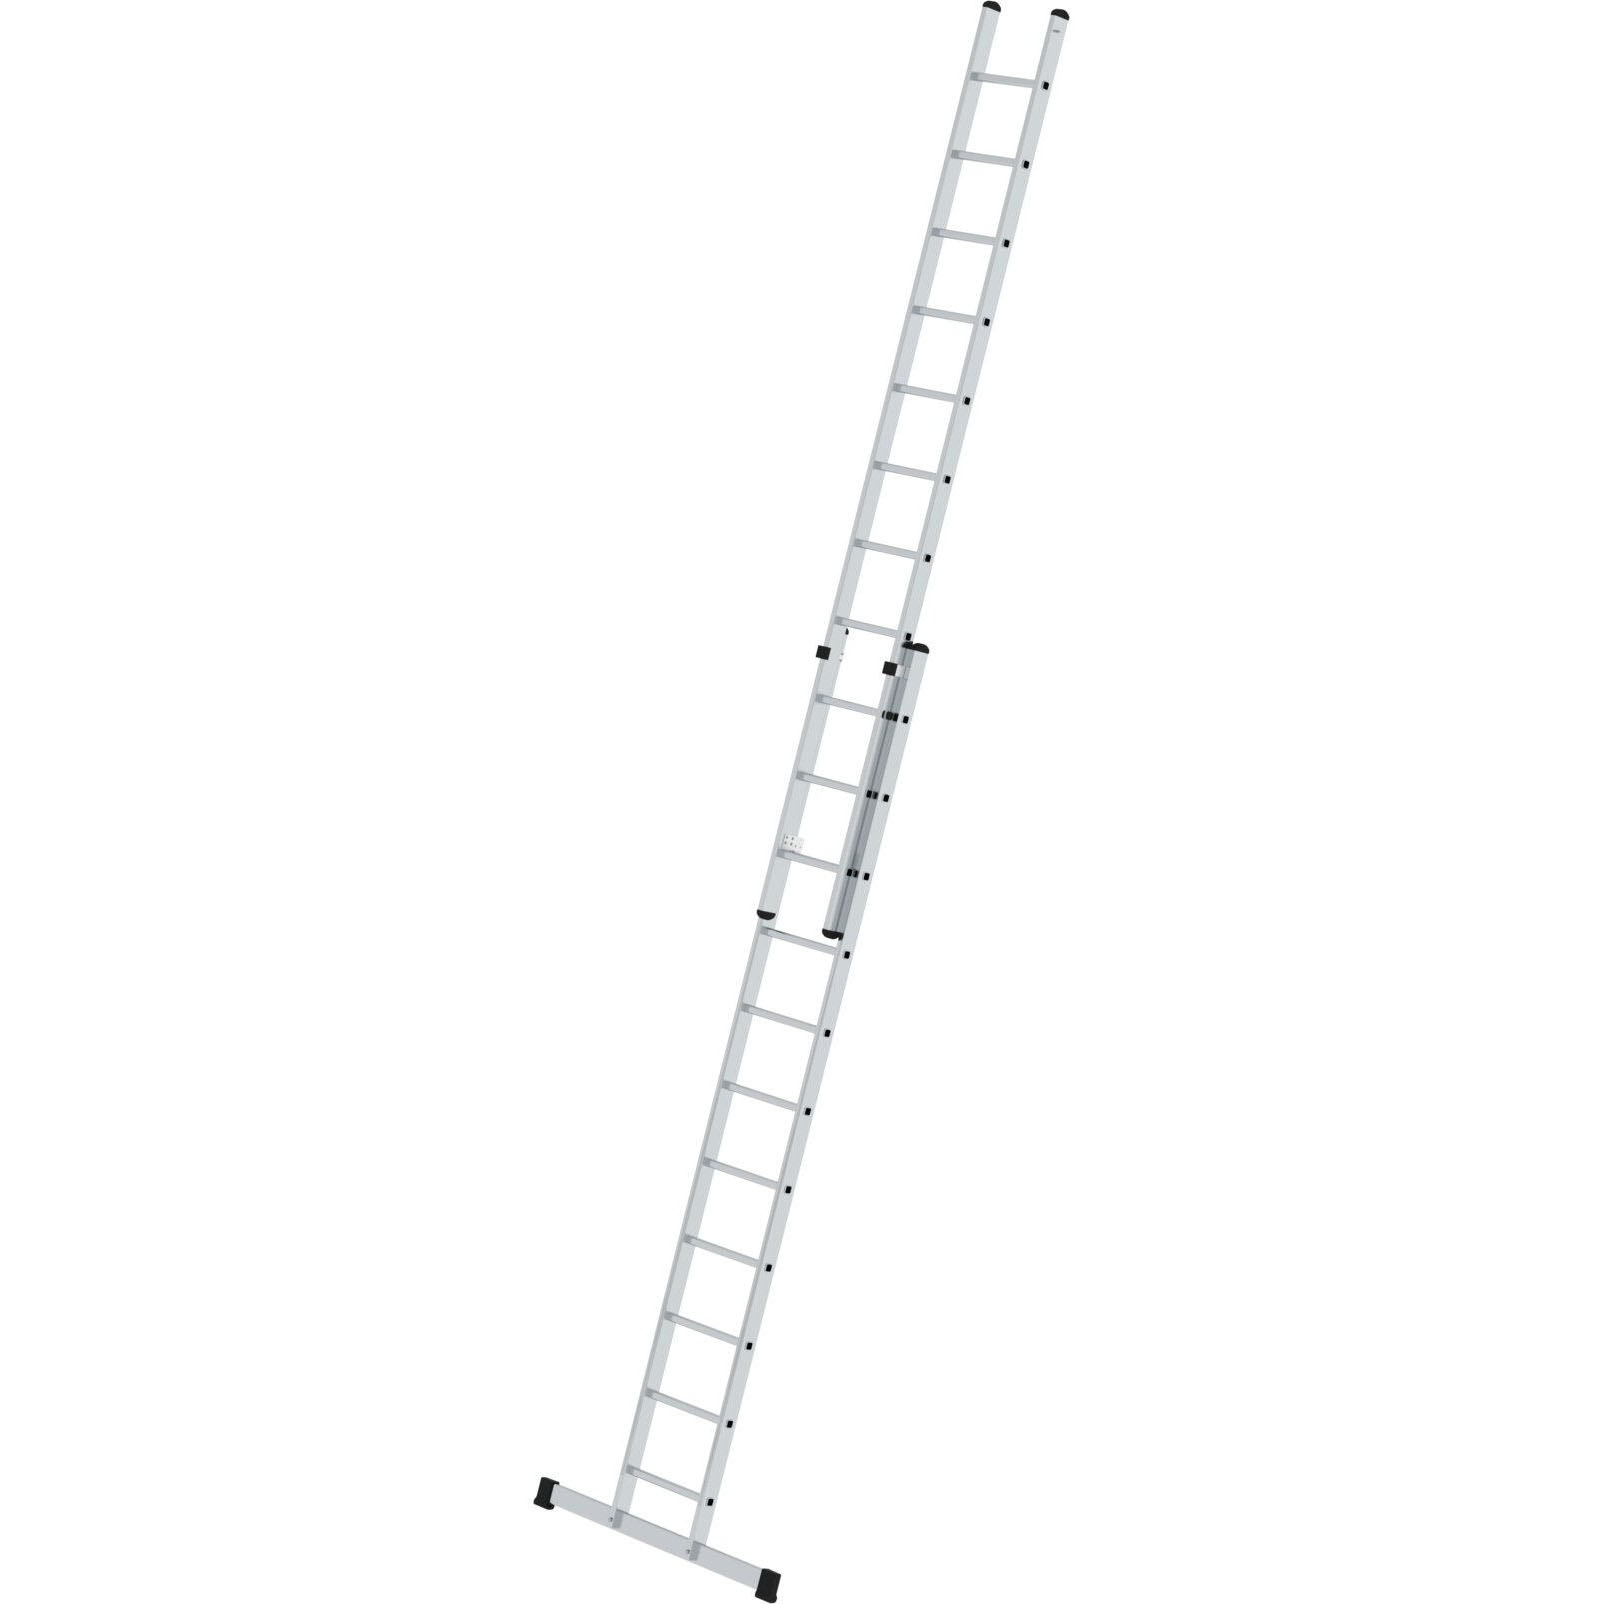 Двухсекционная алюминиевая лестница 2 x 11 со стабилизатором Munk Guenzburger Steigtechnik 11611